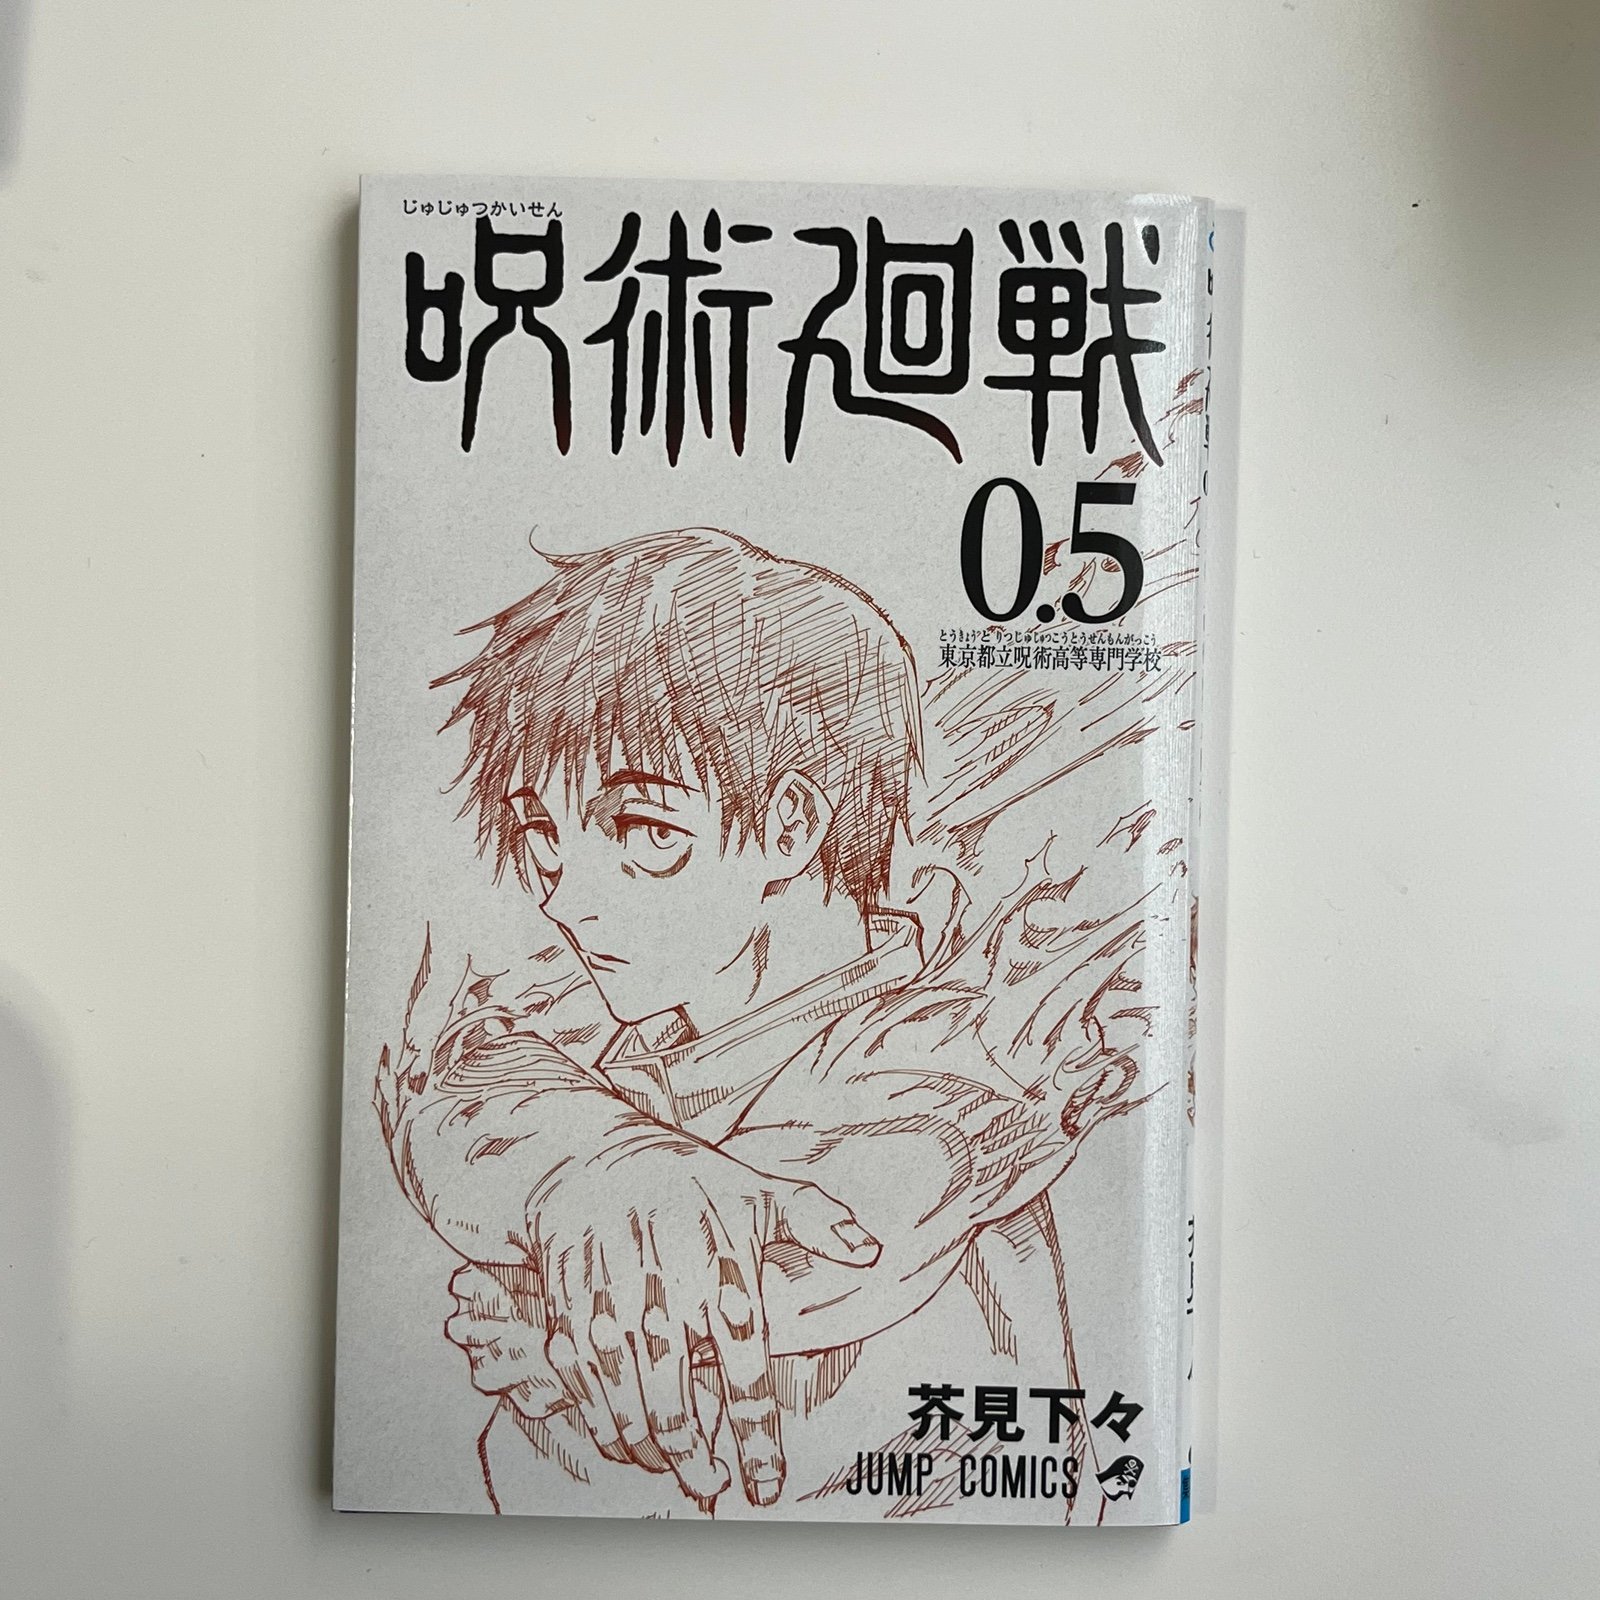 Jujutsu Kaisen manga volume 0.5 8FlGP7VPW